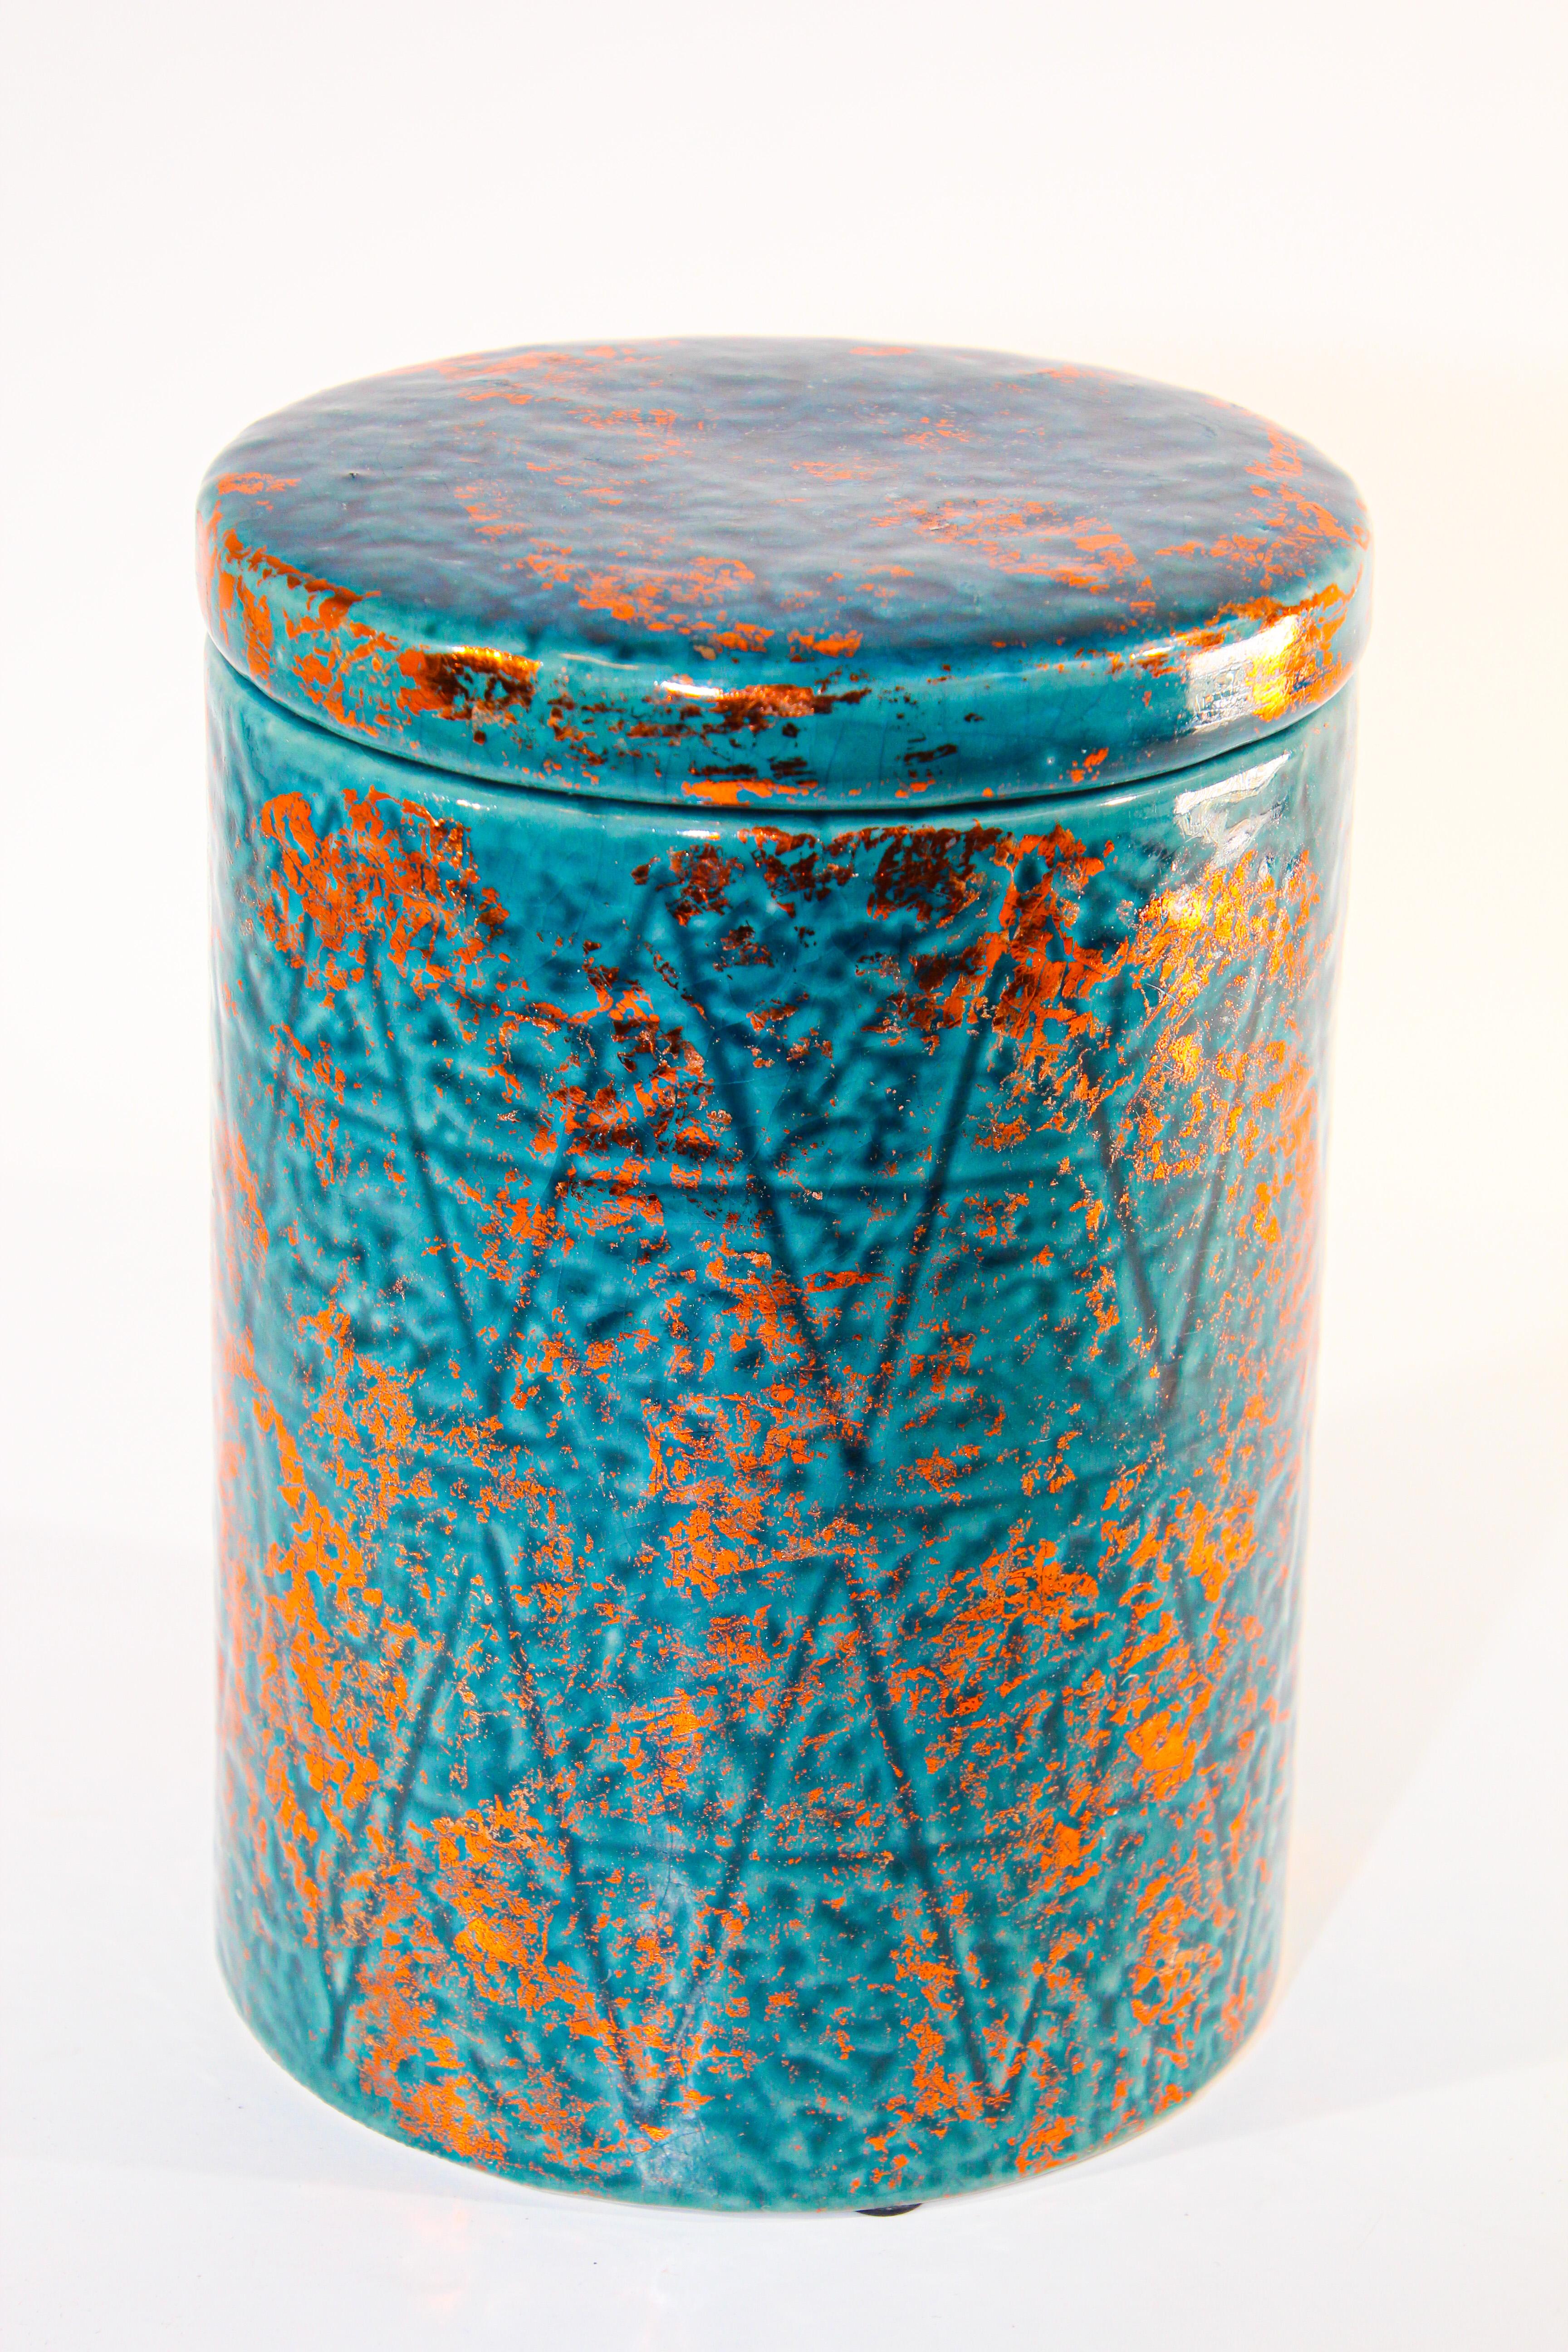 Urne en céramique marocaine avec couvercle, bleu avec couleur cuivre.
Une forme moderne aux lignes épurées, au design texturé.
Idéal pour la cuisine, la salle de bains ou tout autre endroit de style bohème, mauresque, vintage, traditionnel ou